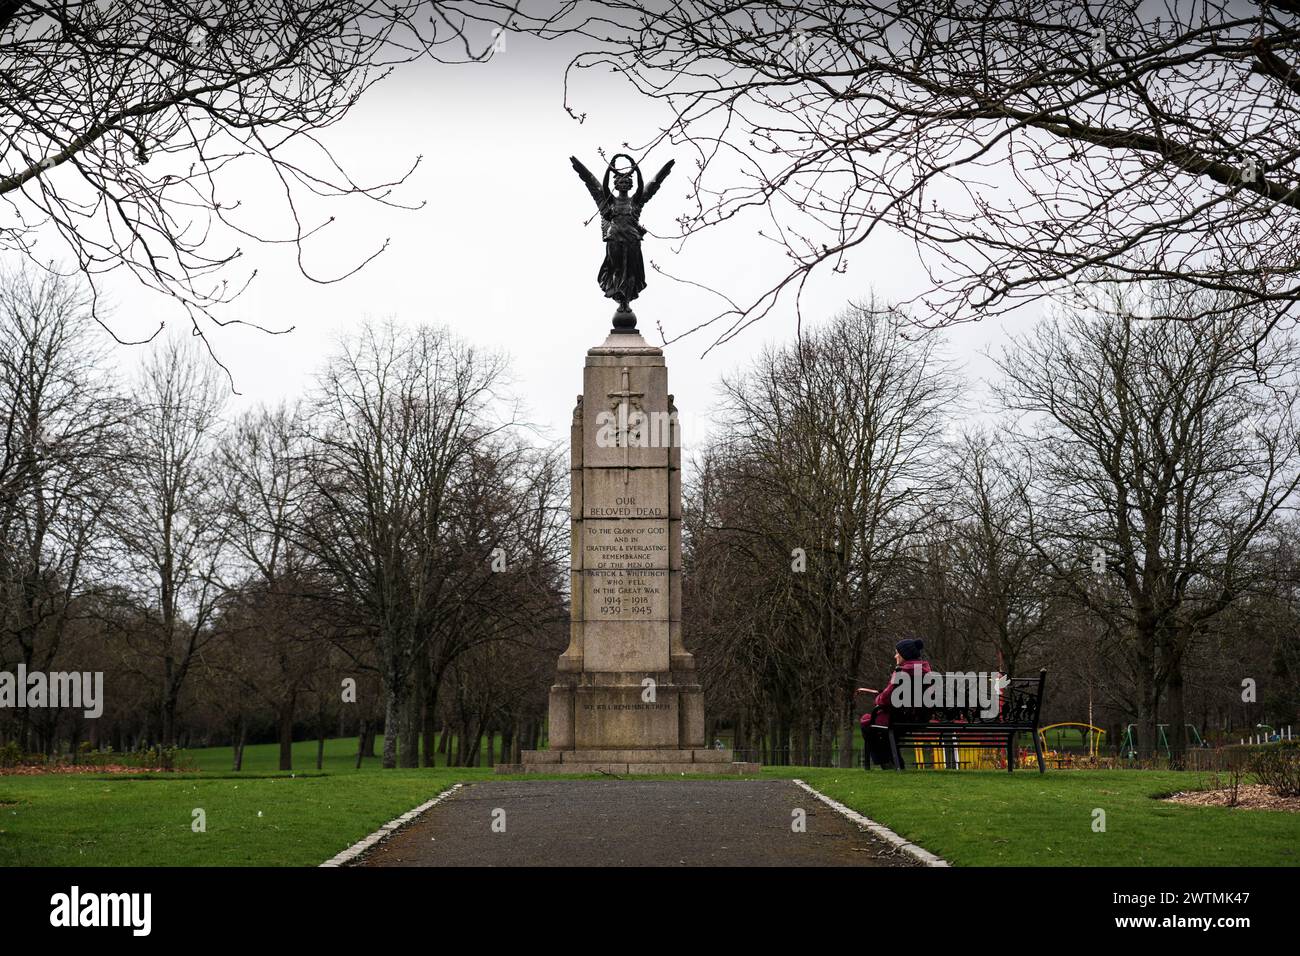 Eine Person sitzt am Partick and Whiteinch war Memorial in Victoria Park, Glasgow, Schottland, das 1922 errichtet wurde. Stockfoto